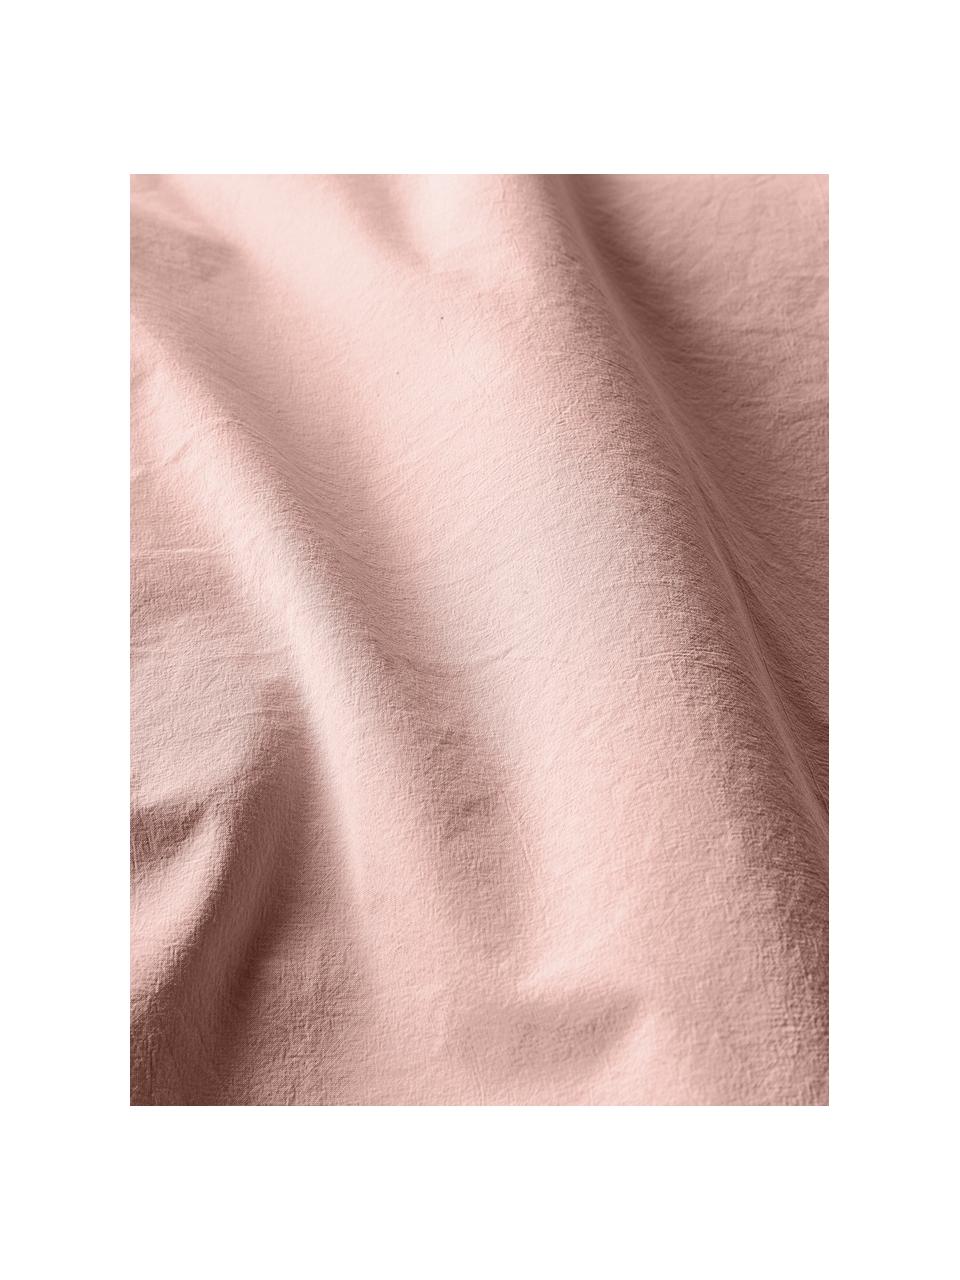 Funda nórdica de algodón lavado Darlyn, 100% algodón
Densidad de hilo 150 TC, calidad estándar

El algodón da una sensación agradable y suave en la piel, absorbe bien la humedad y es adecuado para personas alérgicas.

Este tejido ha sido sometido a un proceso de lavado especial que le da un aspecto Softwash irregular y resistente, pero siendo suave al tacto, flexible y cómodo. Además, su aspecto arrugado natural hace que no necesite planchado.

El material utilizado para este producto ha sido probado contra sustancias nocivas y está certificado según el STANDARD 100 por OEKO-TEX®, 4265CIT, CITEVE, Melocotón, Cama 90 cm (155 x 220 cm)